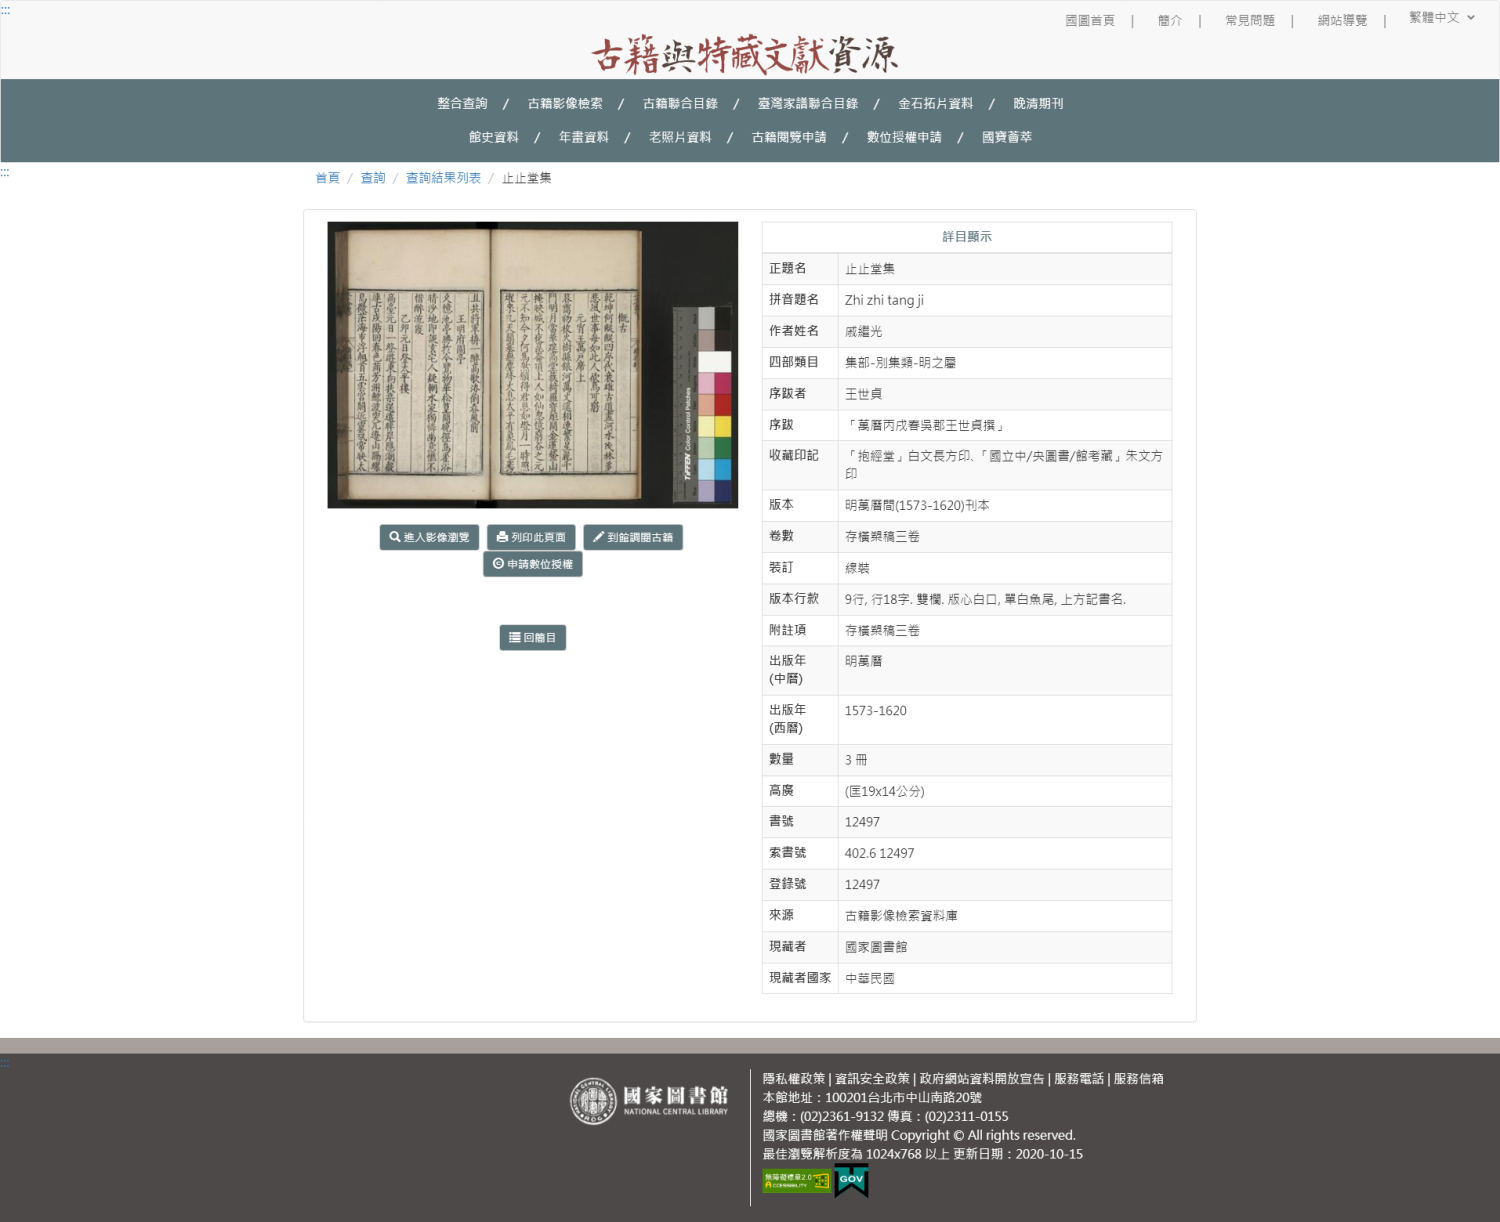 古籍與特藏文獻資源 - 國家圖書館-詳細內容